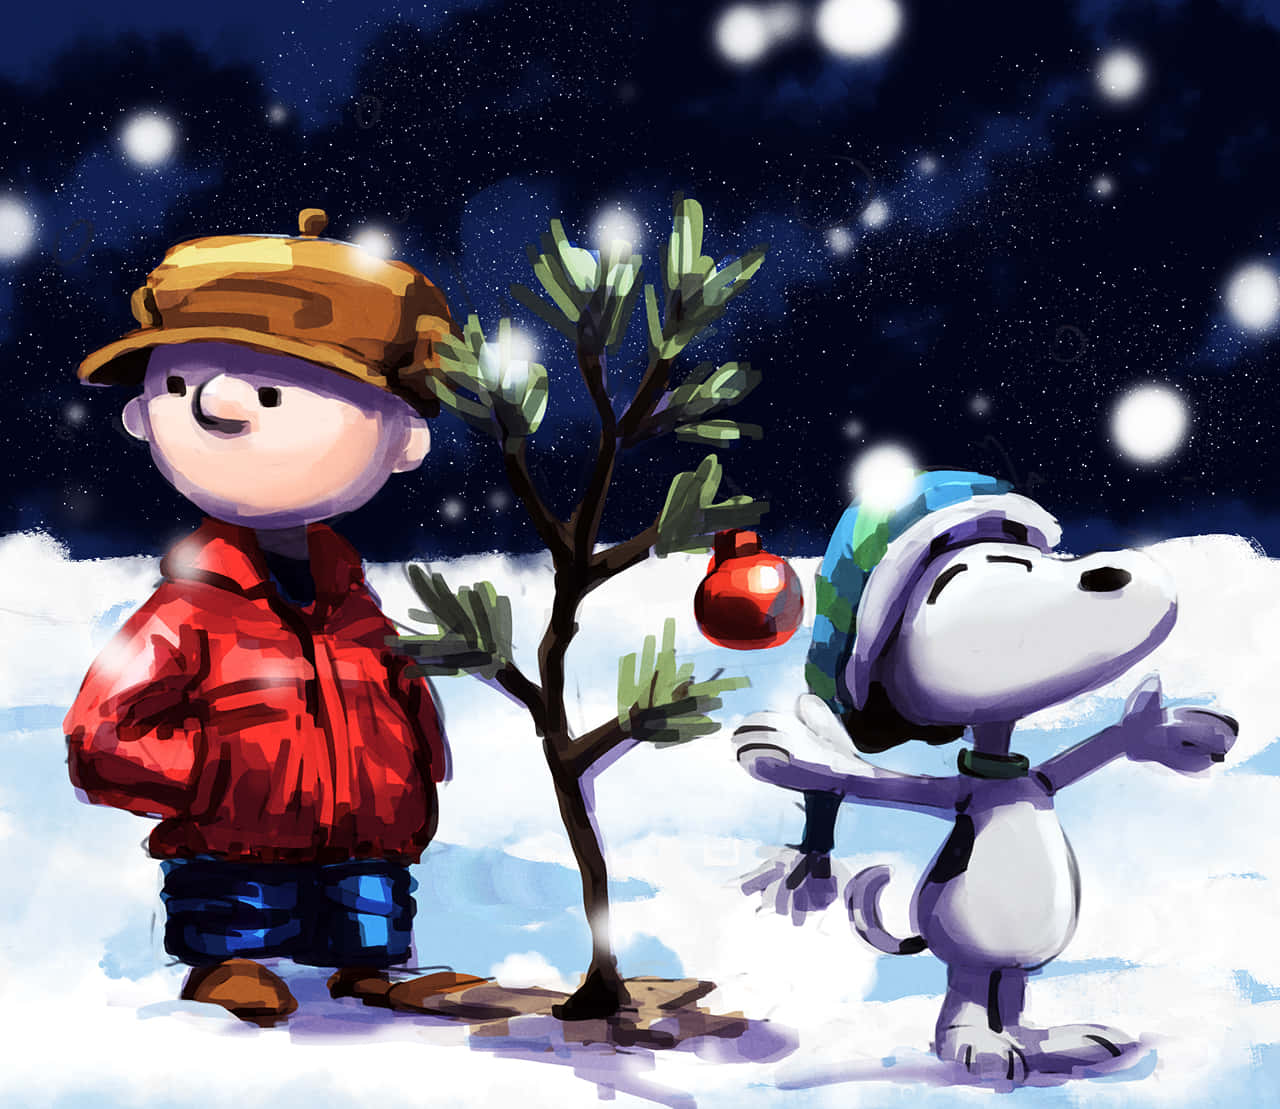 Charliebrown E Snoopy Nell'arte Digitale Del Natale. Sfondo